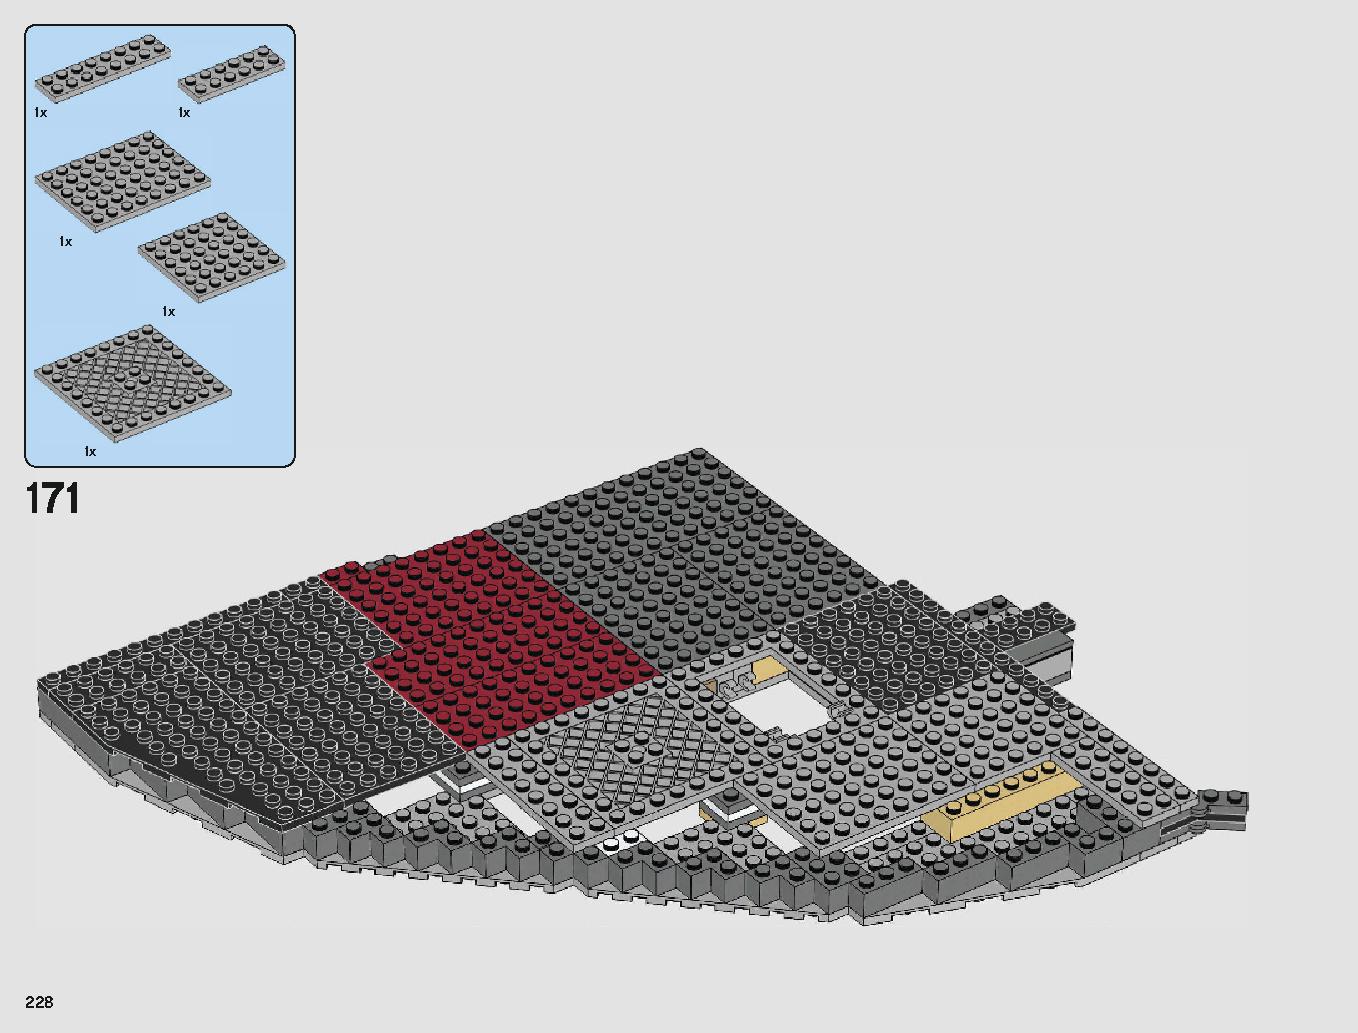 クラウド・シティ 75222 レゴの商品情報 レゴの説明書・組立方法 228 page